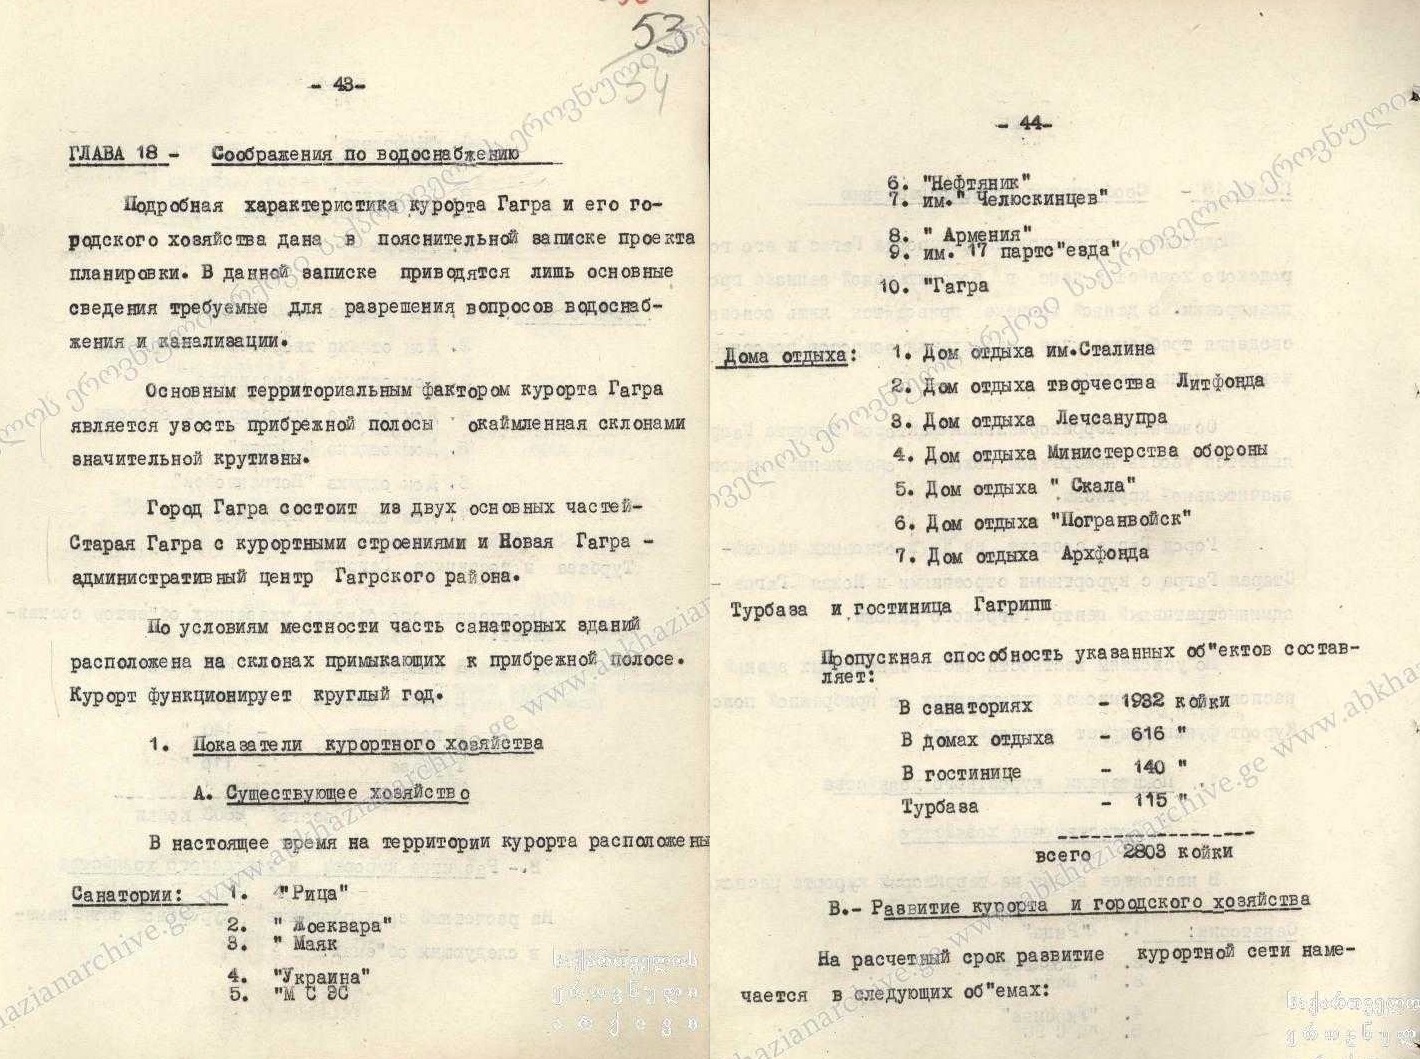 1960 Курортные объекты Перечень.